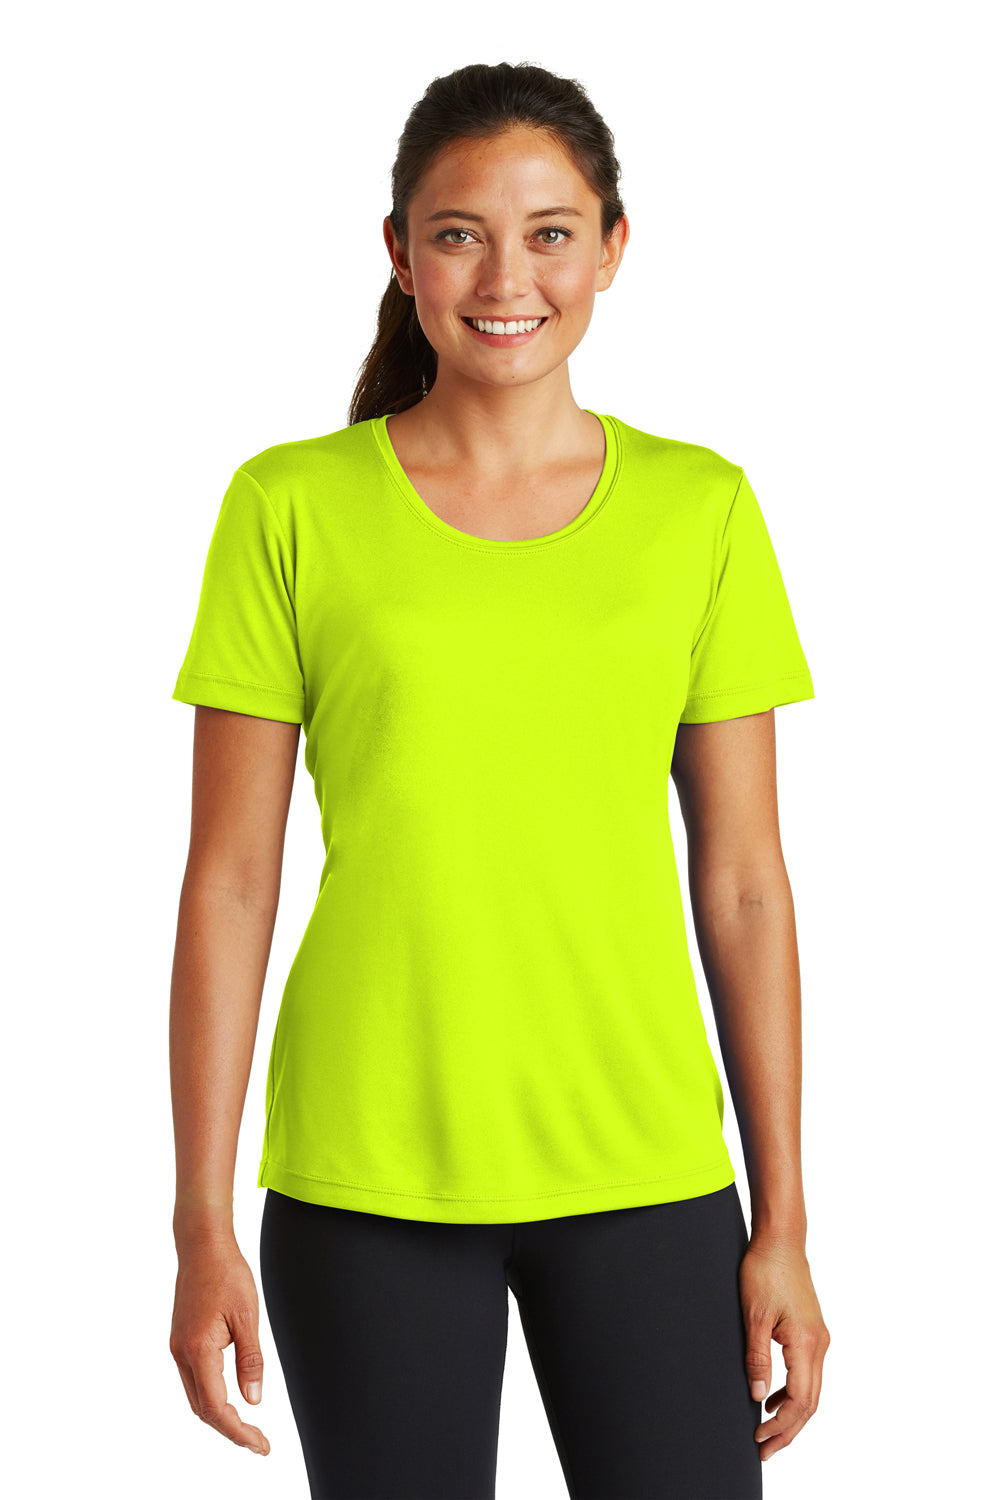 neon t shirts women's